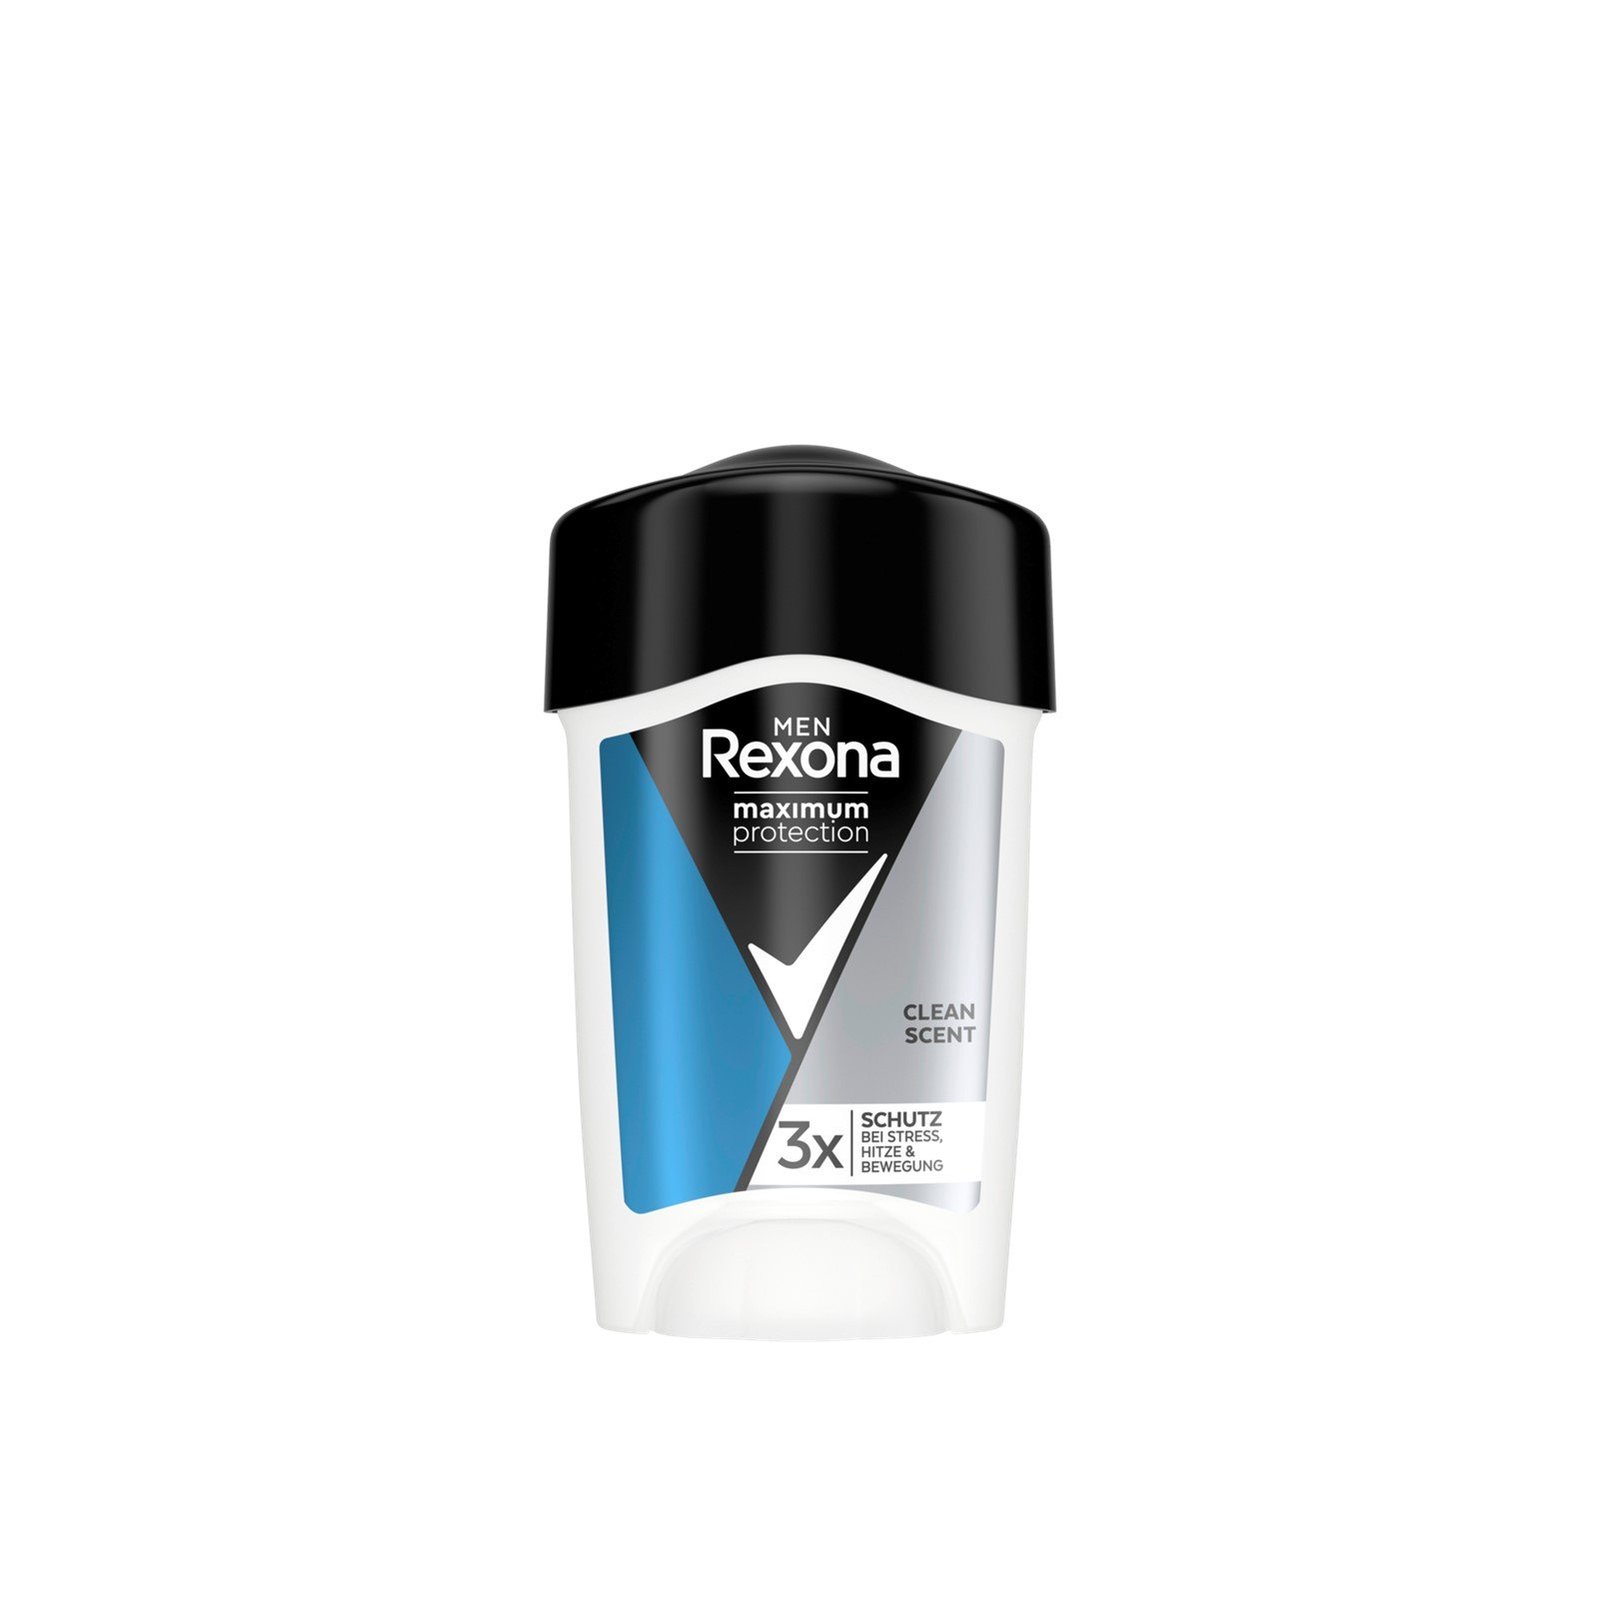 Rexona Men Maximum Protection Clean Scent 96h Anti-Perspirant Cream 45ml (1.52fl oz)